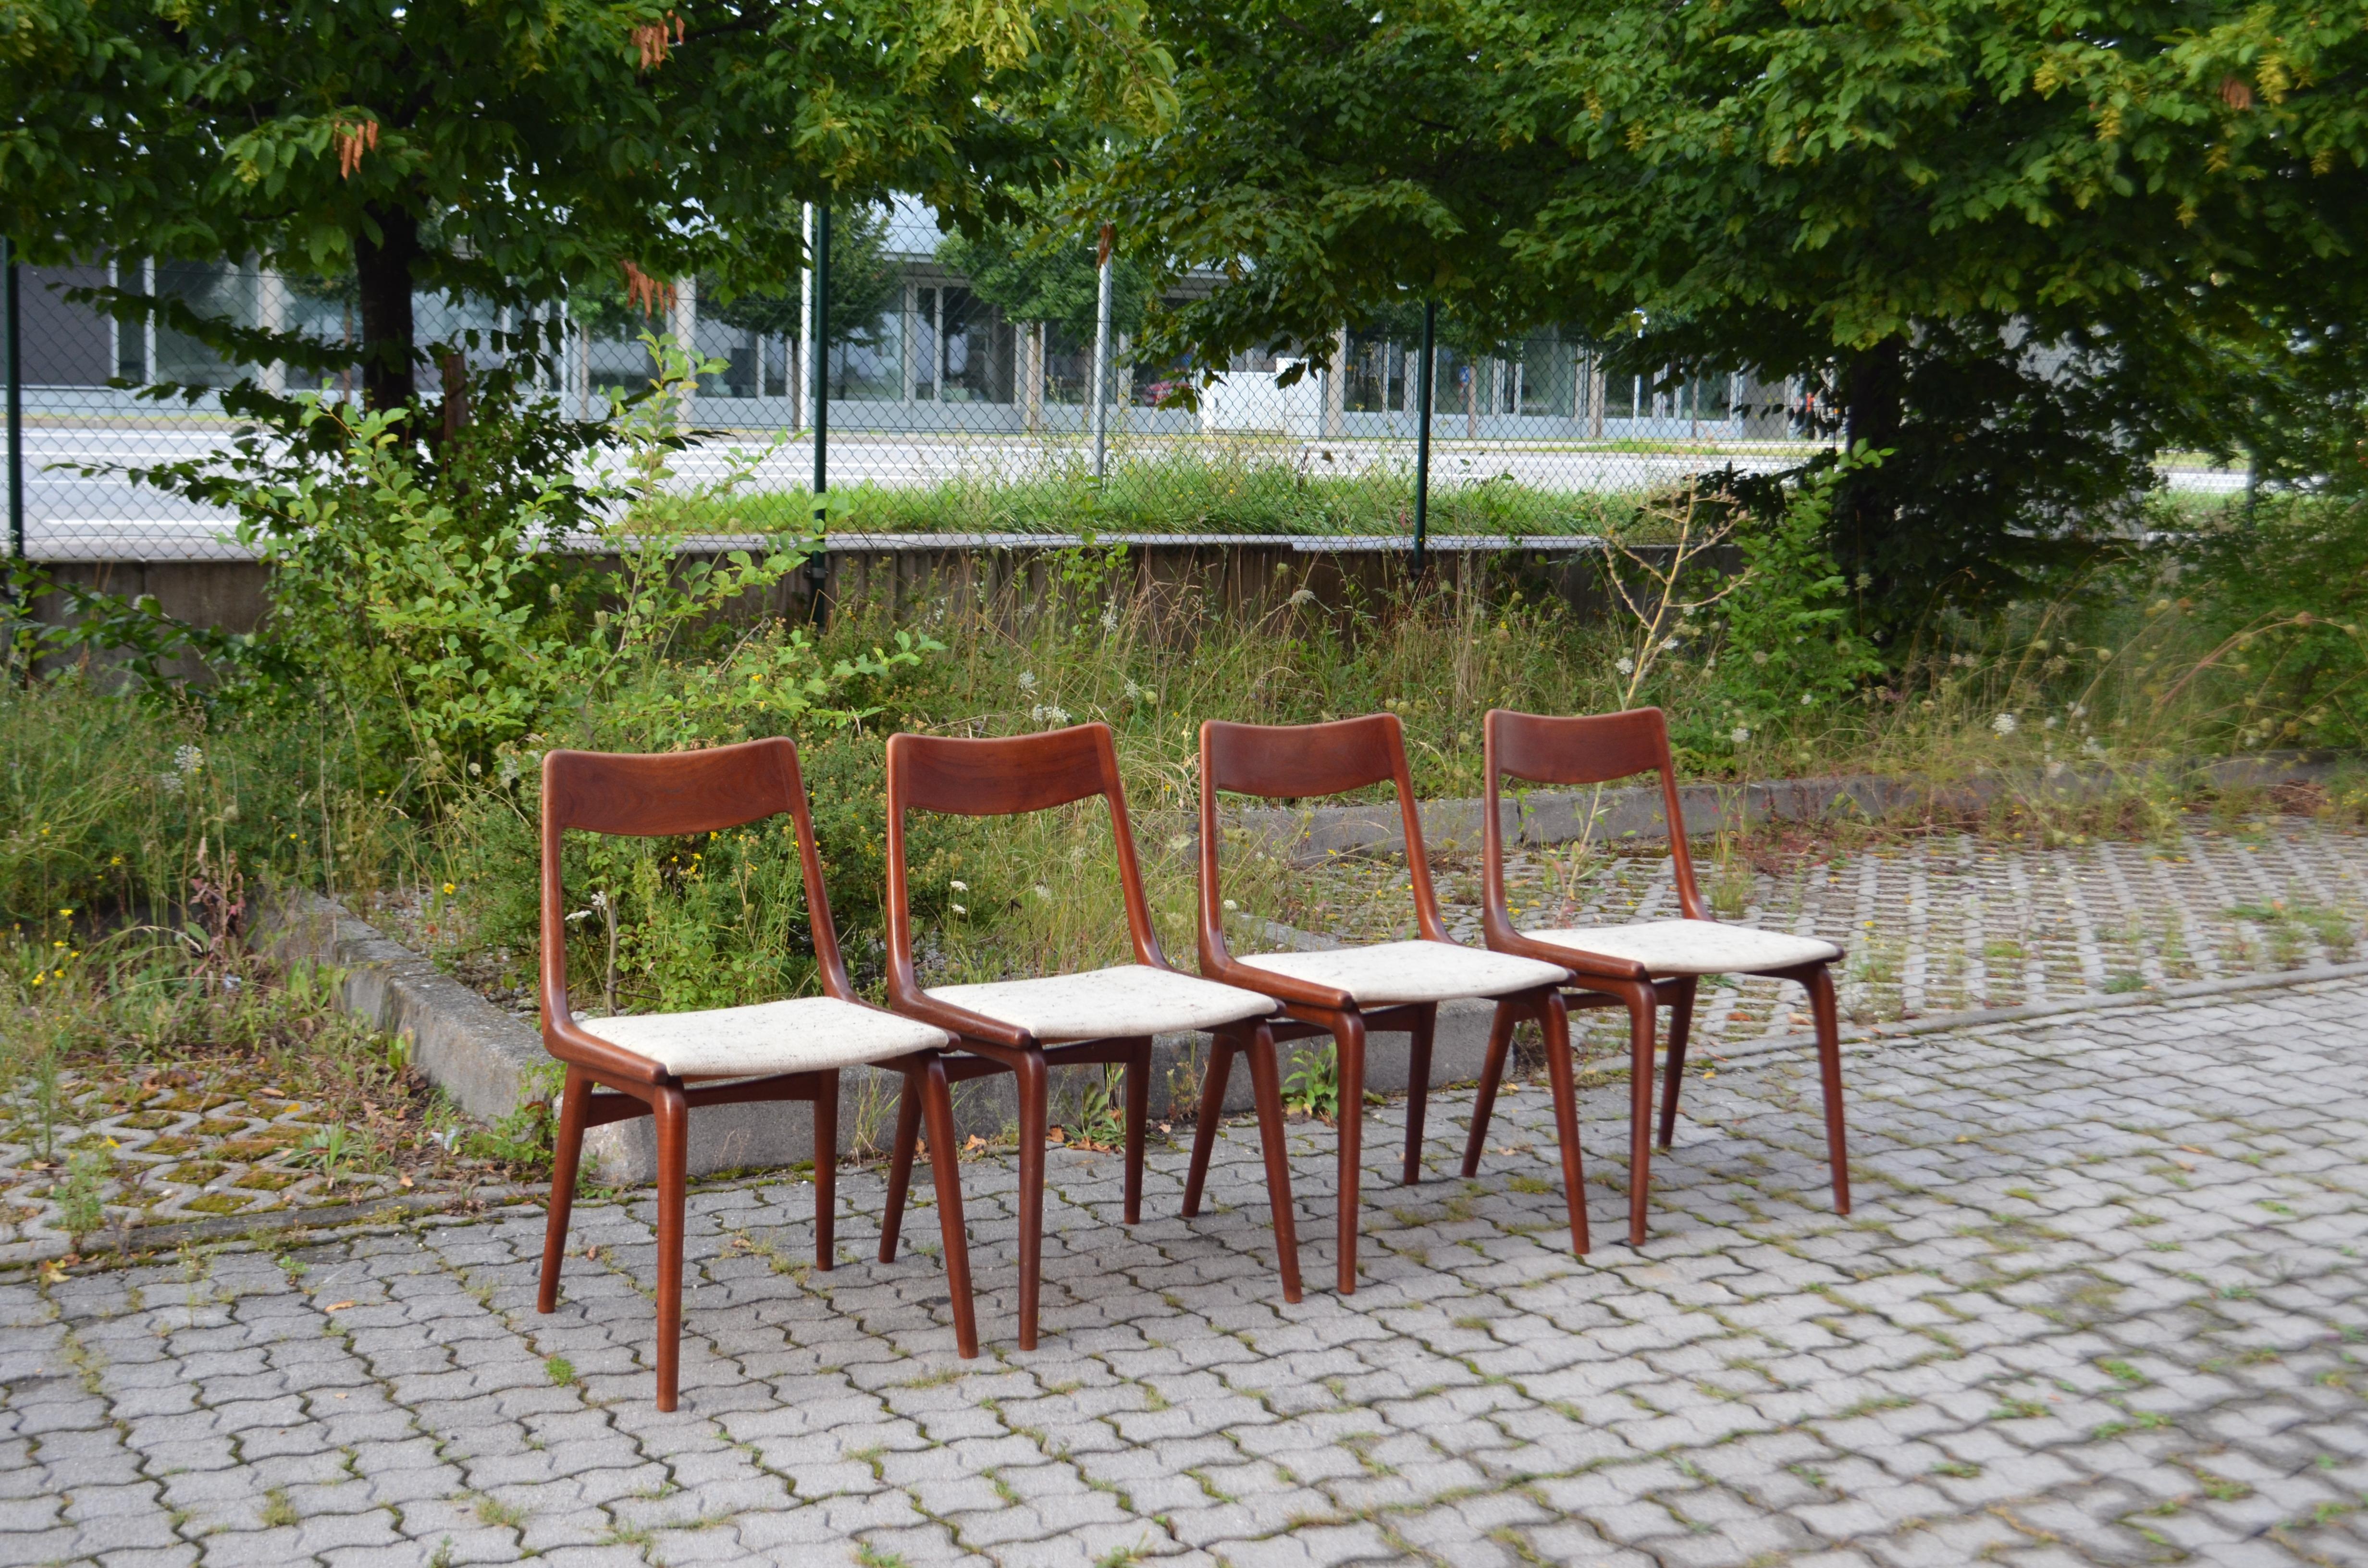 Alfred Christensen Esstisch-Bumerang-Stühle für Slagelse Møbelværk.
Massives Teakholz und originaler Wollstoff.
Es handelt sich um sehr alte Versionen mit dem alten Stempel unter dem Sitz.
Das Teakholz ist viel röter und dunkler und im Laufe der